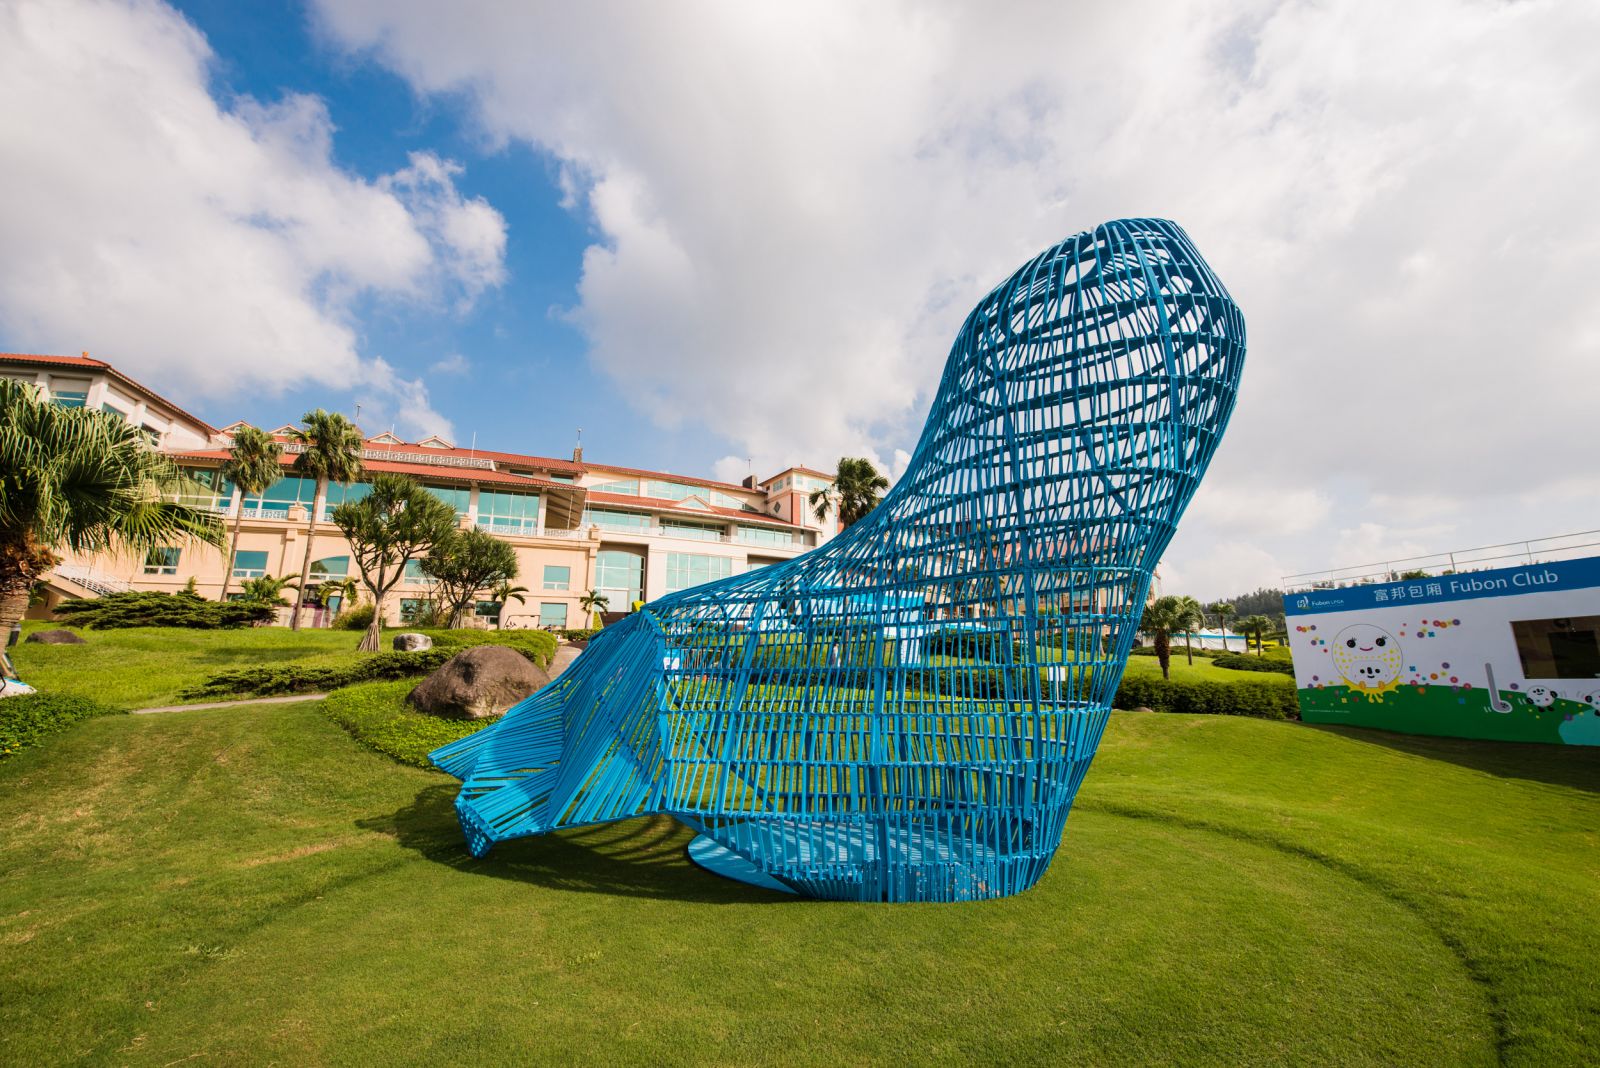 草地上的《有機之靈》，臺灣鋼鐵雕塑藝術家張子隆作品。鋼鐵廢料回收創作出線條俐落的大型有機作品，民眾可以進入到作品內部，觸摸材質並體會空間奧妙。